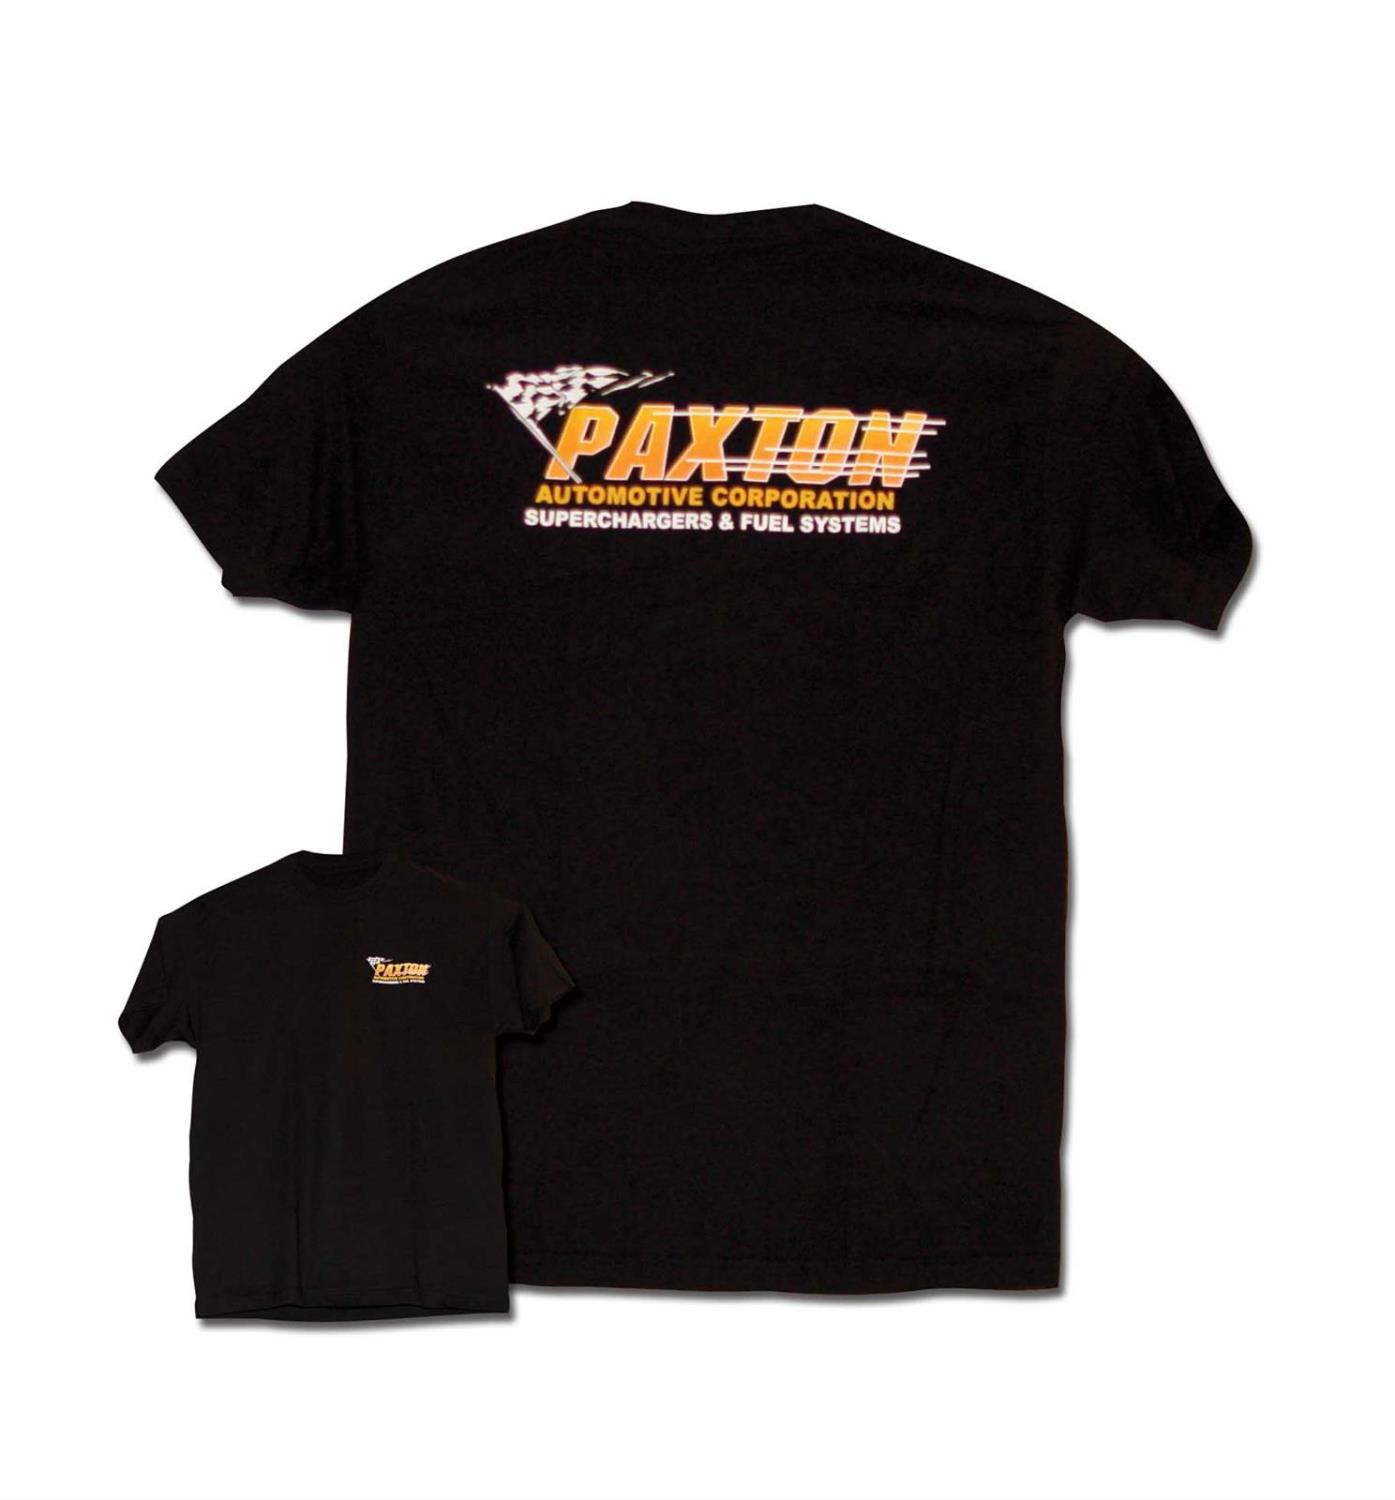 Paxton Retro Flamehead T-Shirt Tan Large